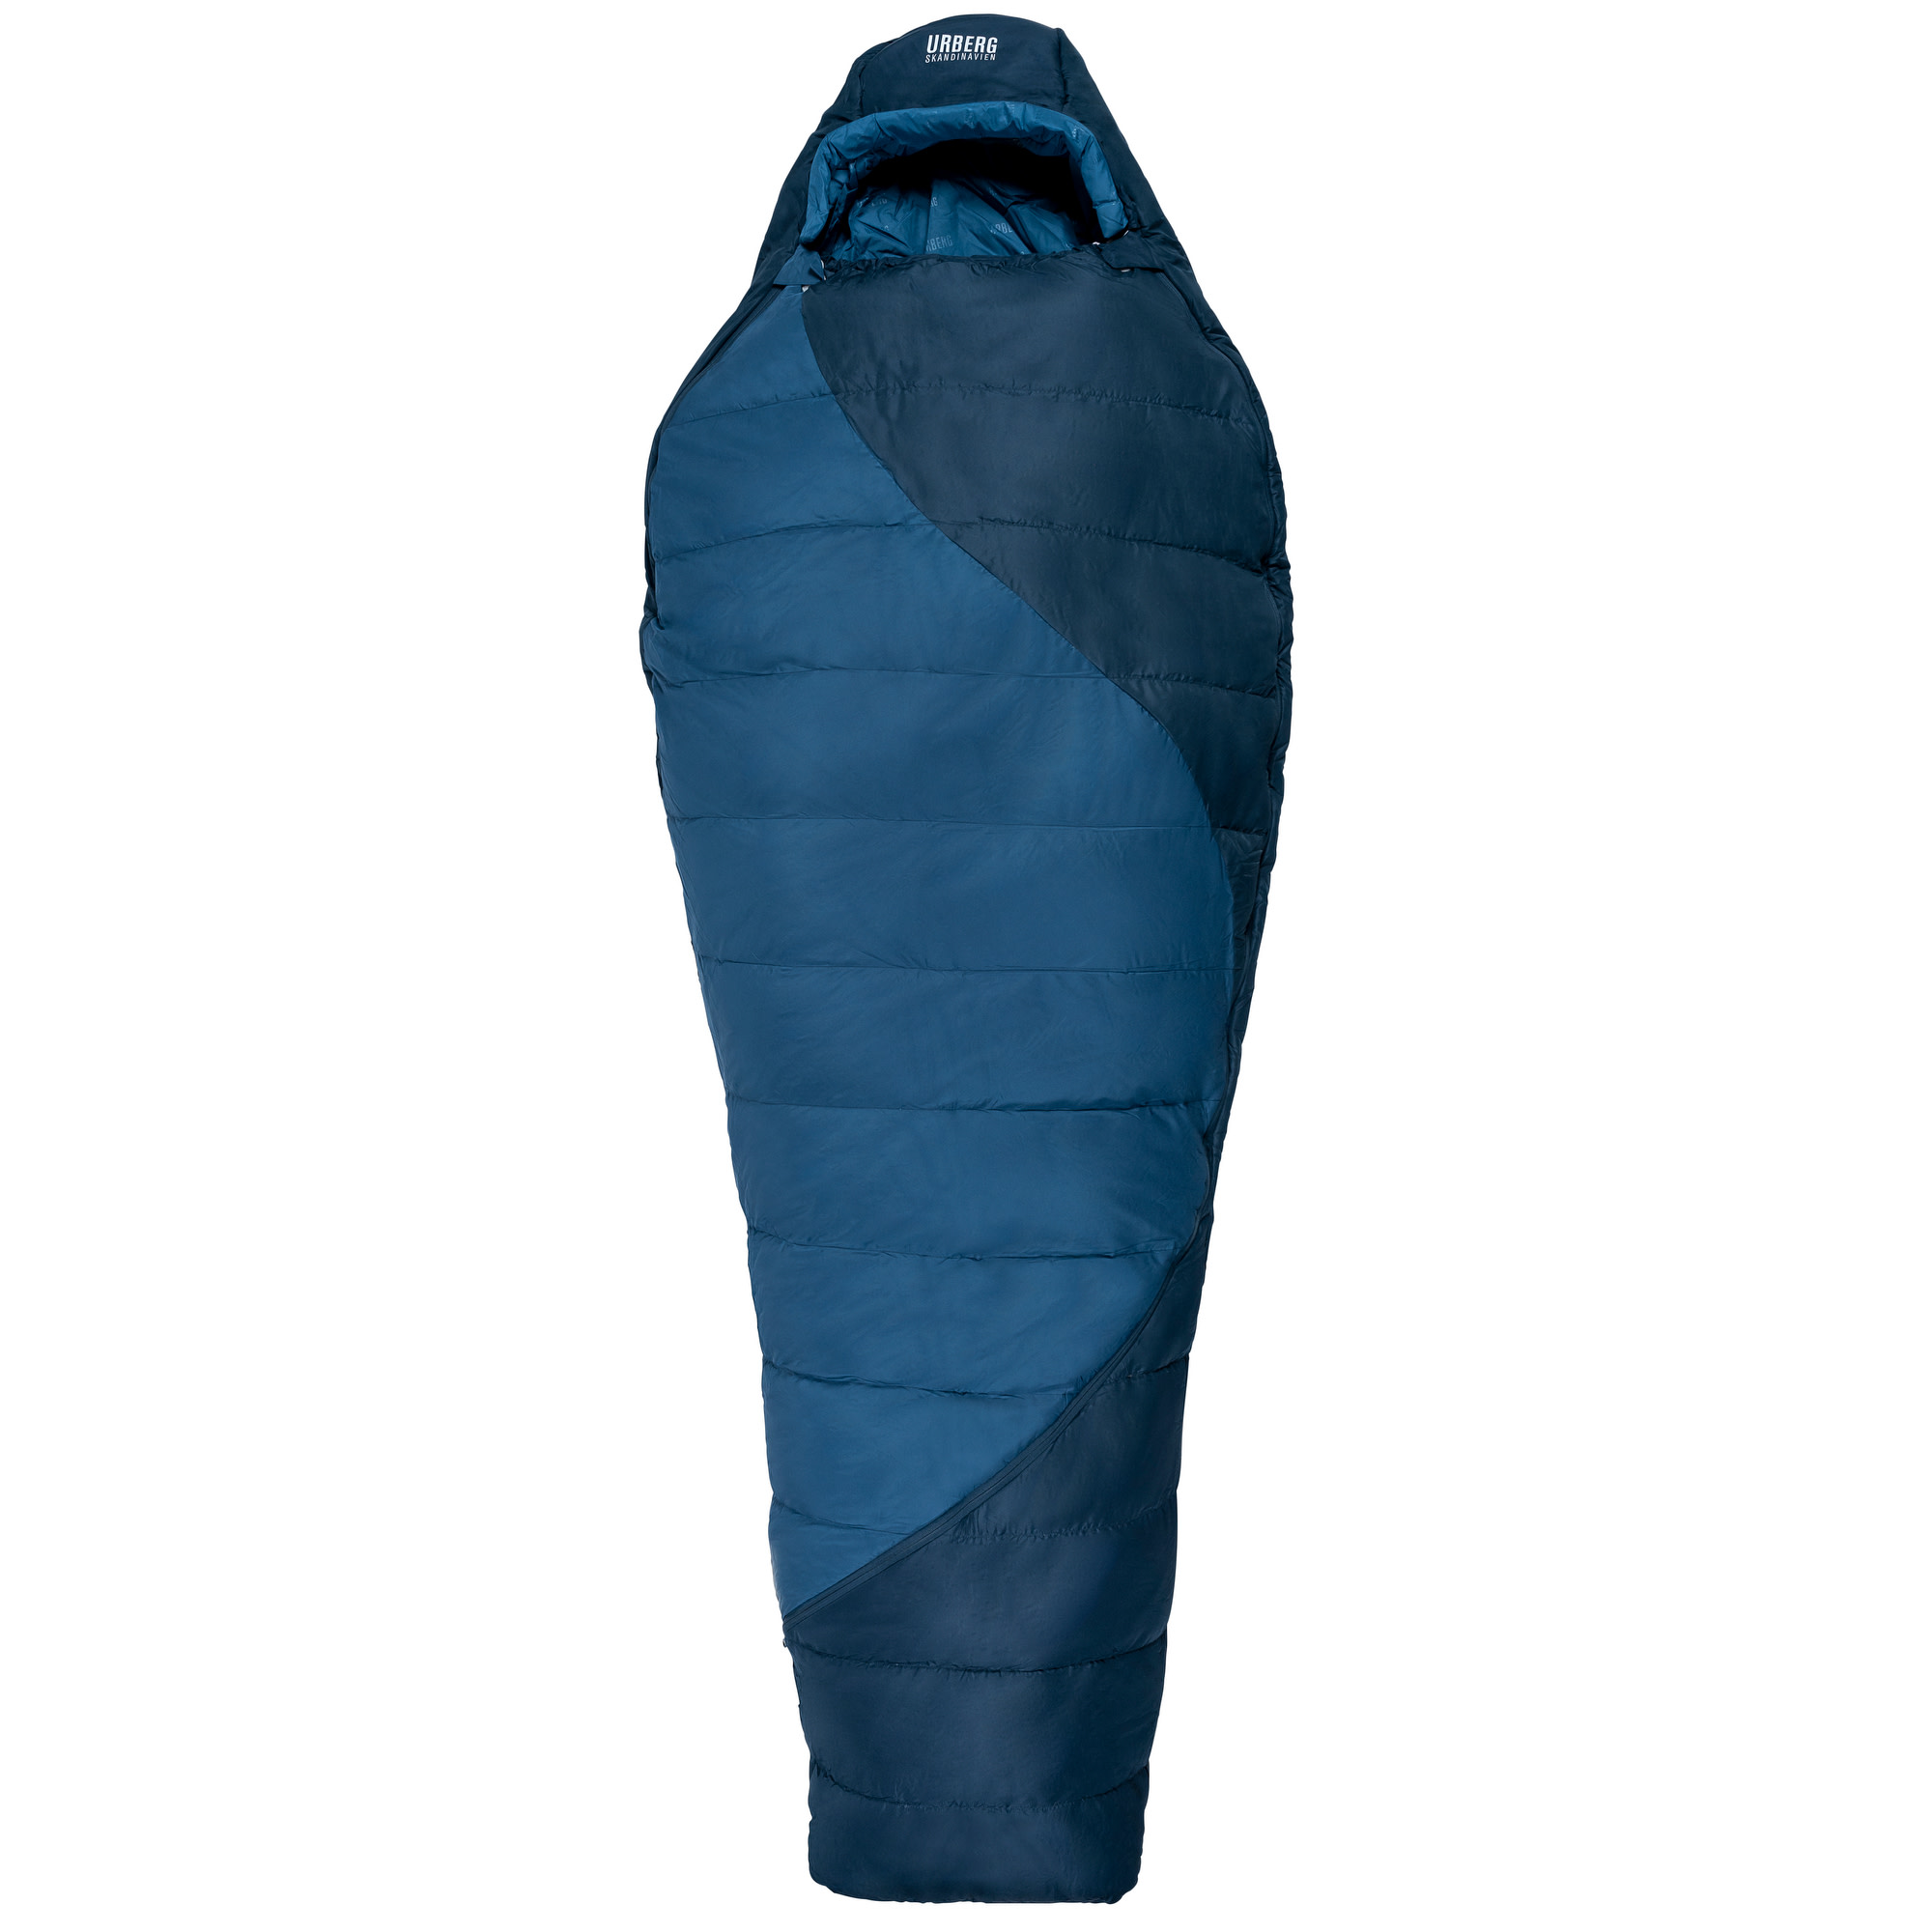 Ritsem Hybrid Sleepingbag 0°C Midnight Navy/Mallard Blue